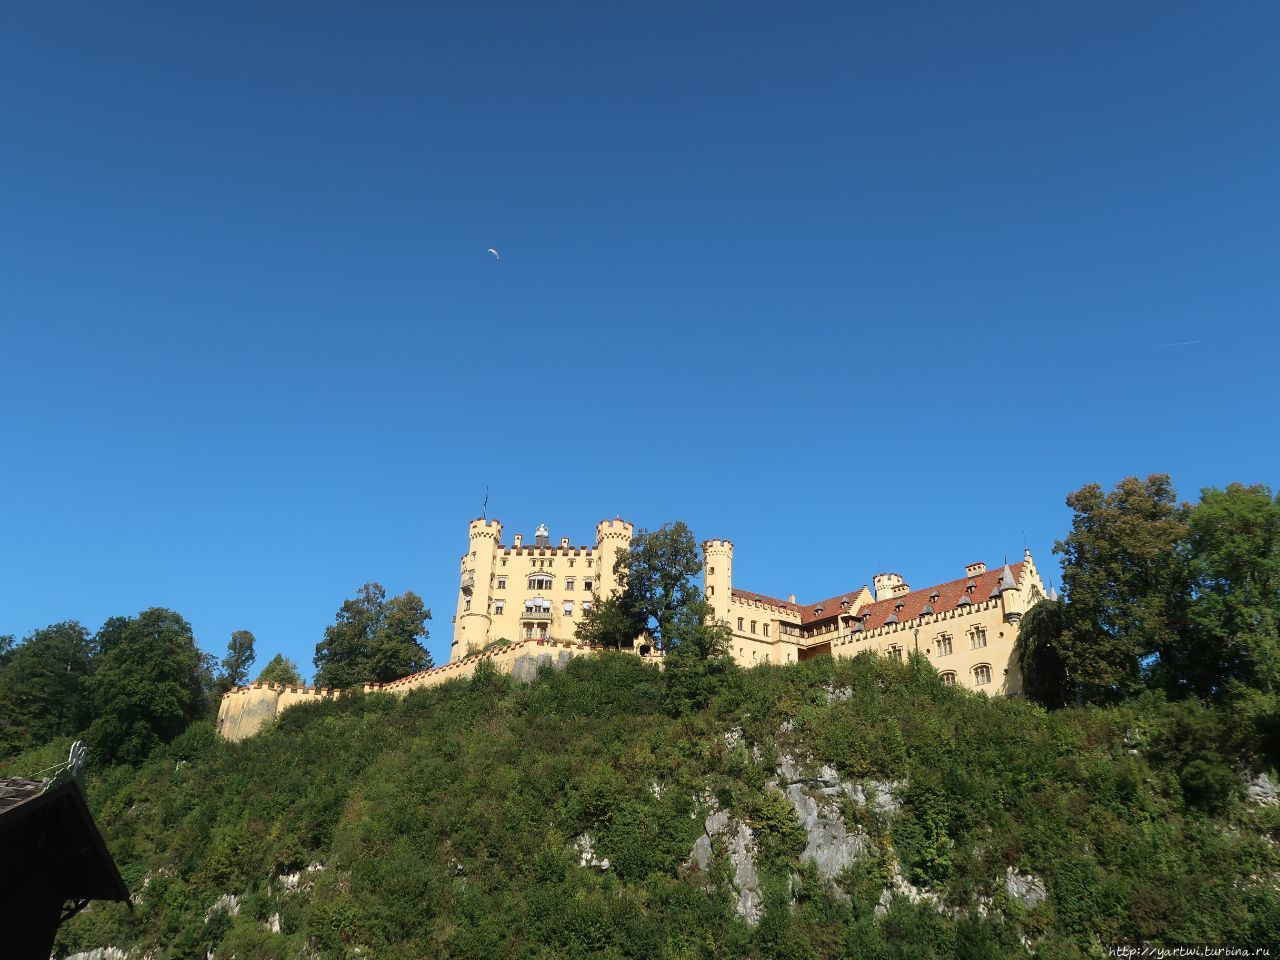 Замок Хоэншвангау расположен прямо напротив замка Нойшванштайн. В этом замке баварский король Людвиг II  принимал композитора Рихтера Вагнера. Швангау, Германия